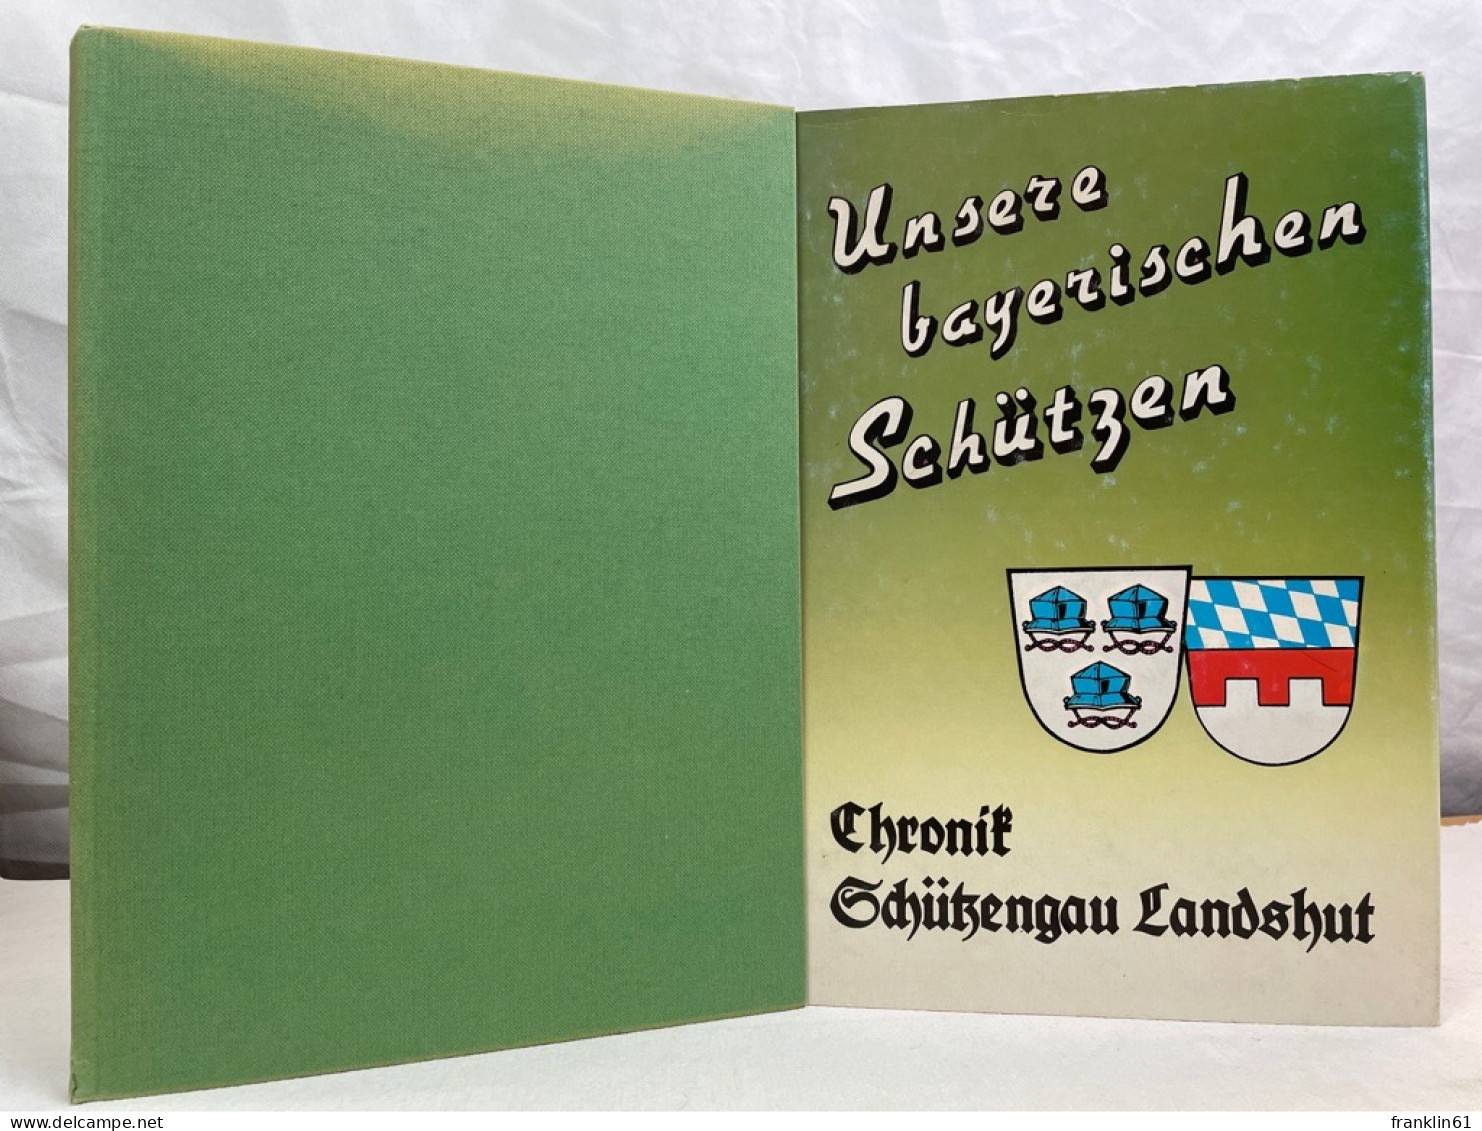 Unsere Bayerischen Schützen. Chronik Schützengau Landshut. - 4. Neuzeit (1789-1914)